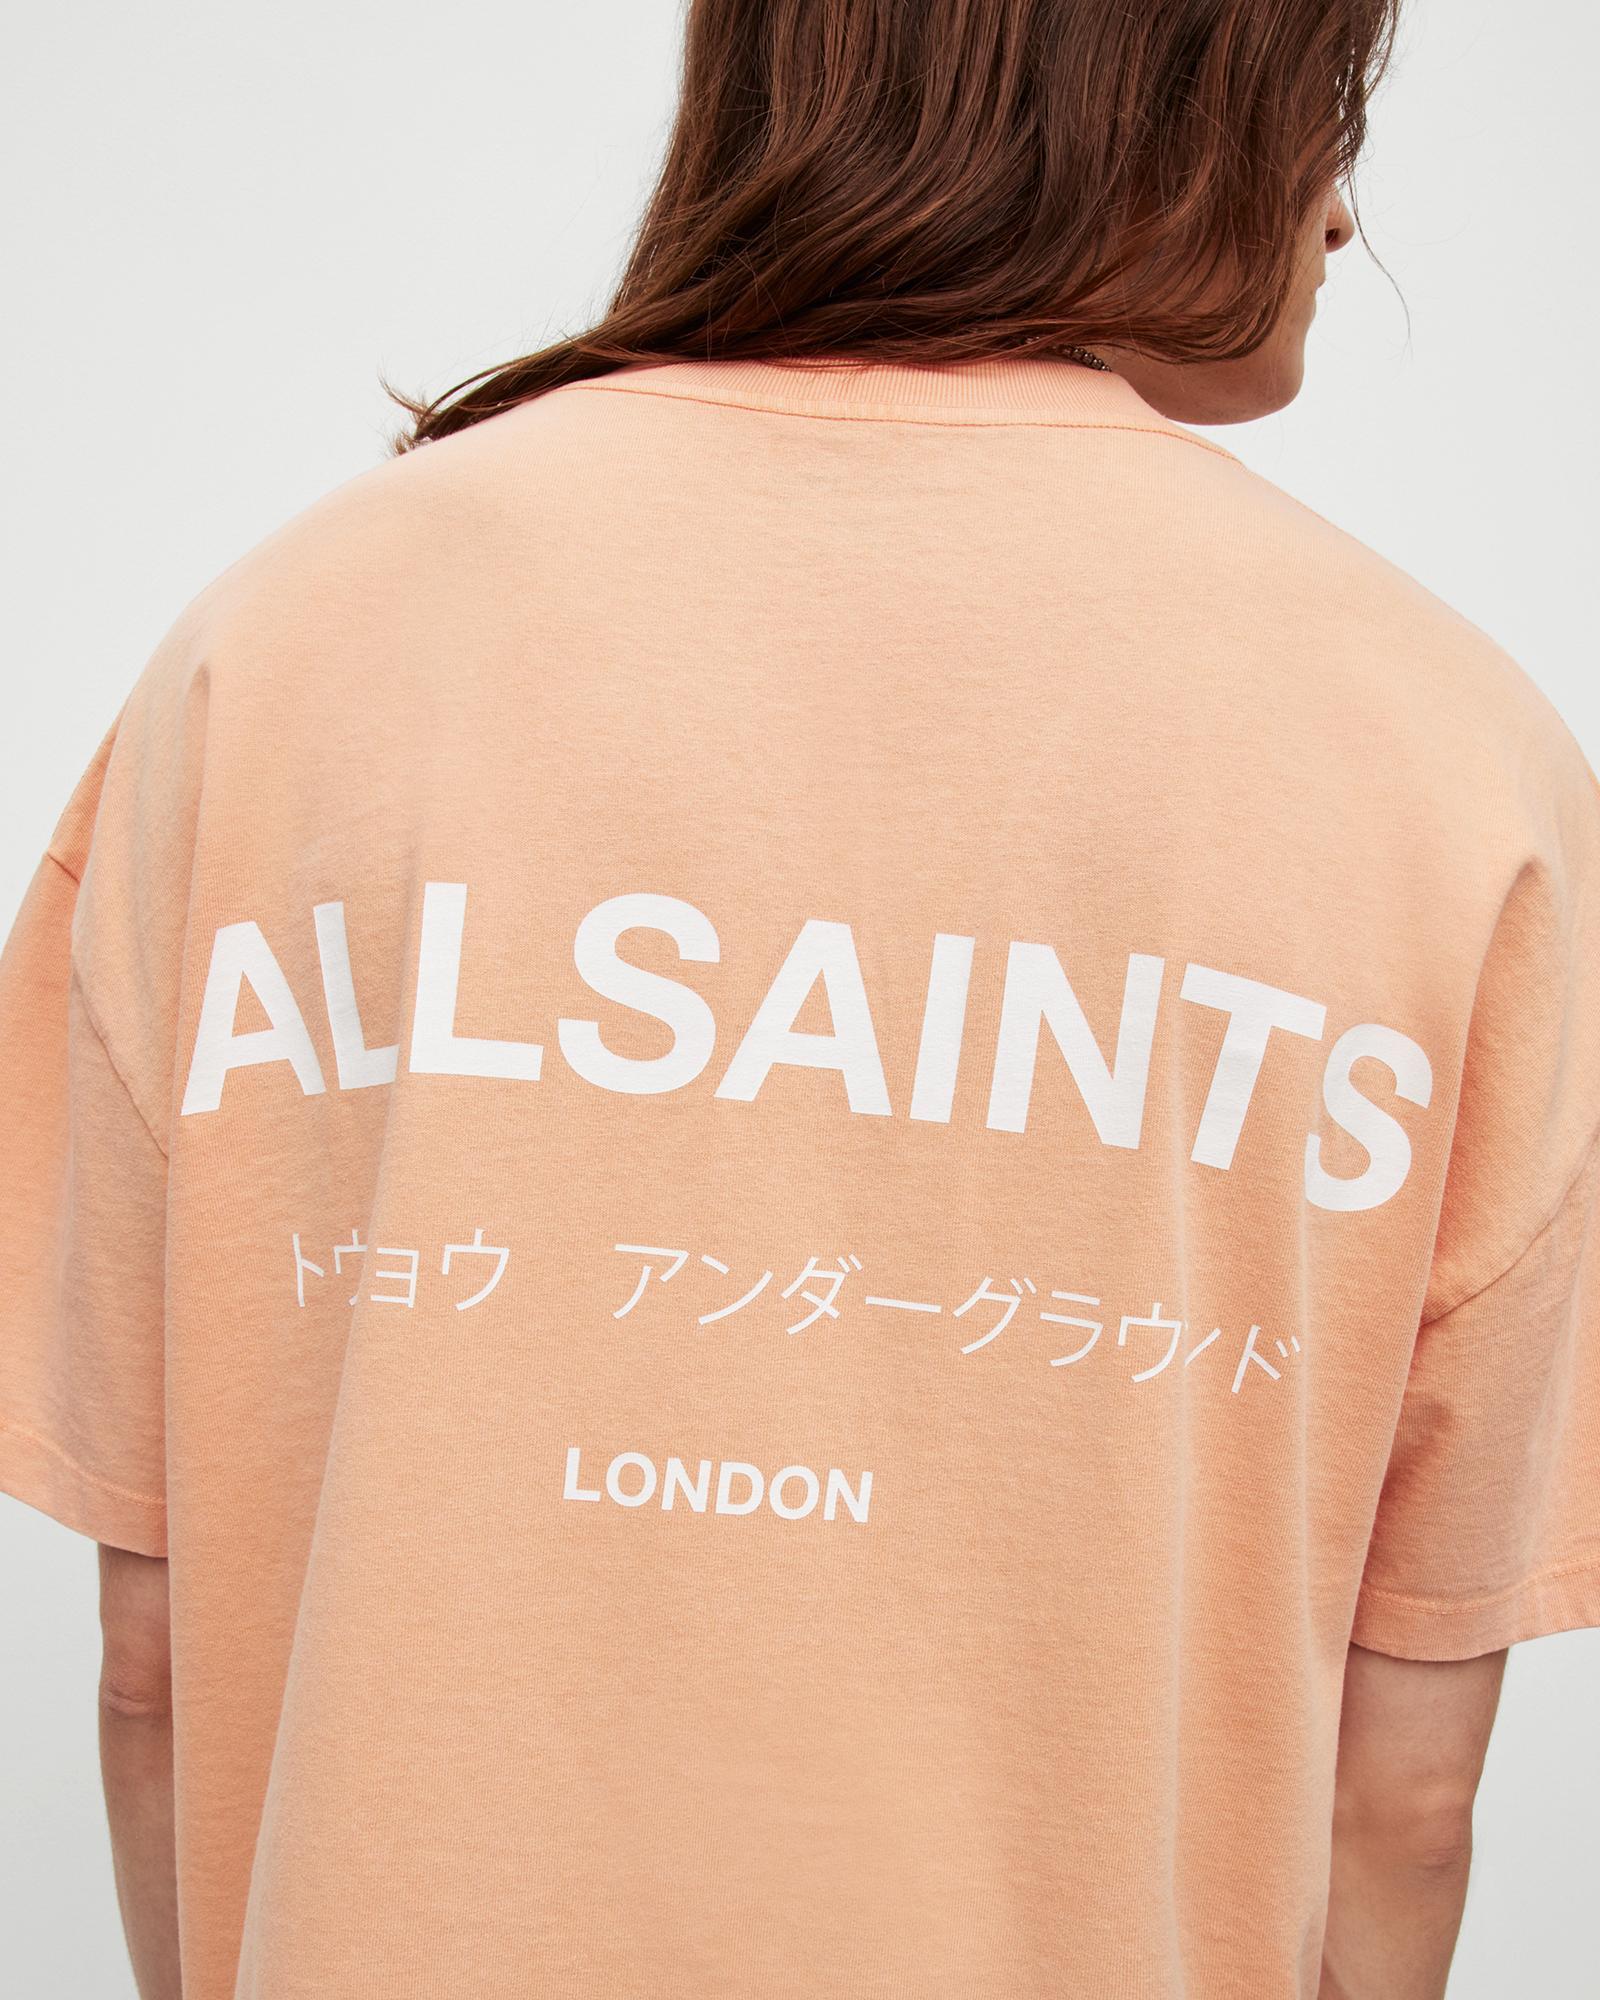 AllSaints Underground Oversized Crew Neck T-Shirt Product Image